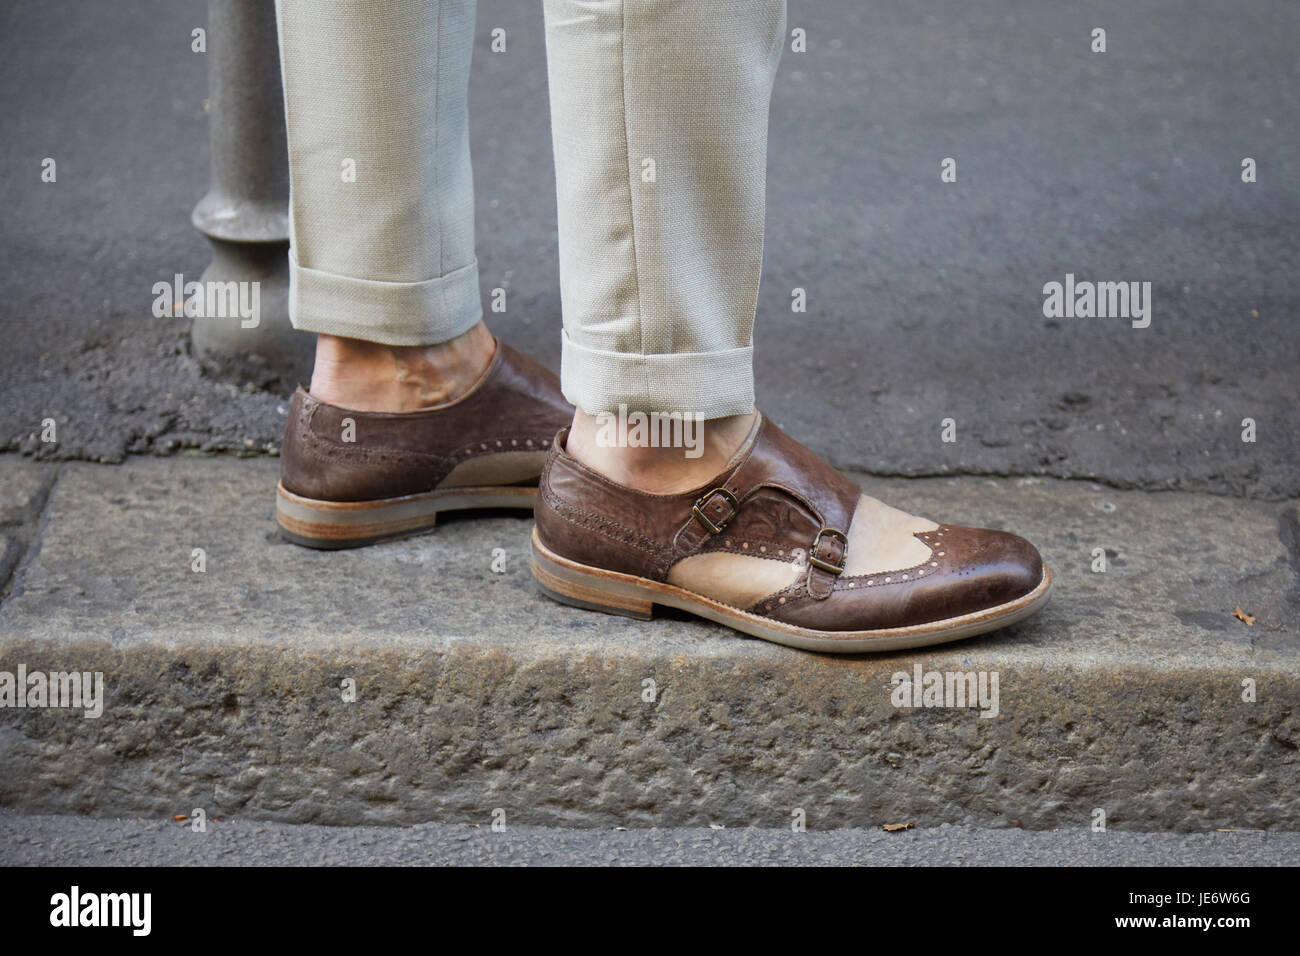 Milano - 17 giugno: Uomo marrone con scarpe in pelle beige e pantaloni  prima di Versace fashion show, la Settimana della Moda Milanese street  style on June 17, 2017 in Mila Foto stock - Alamy